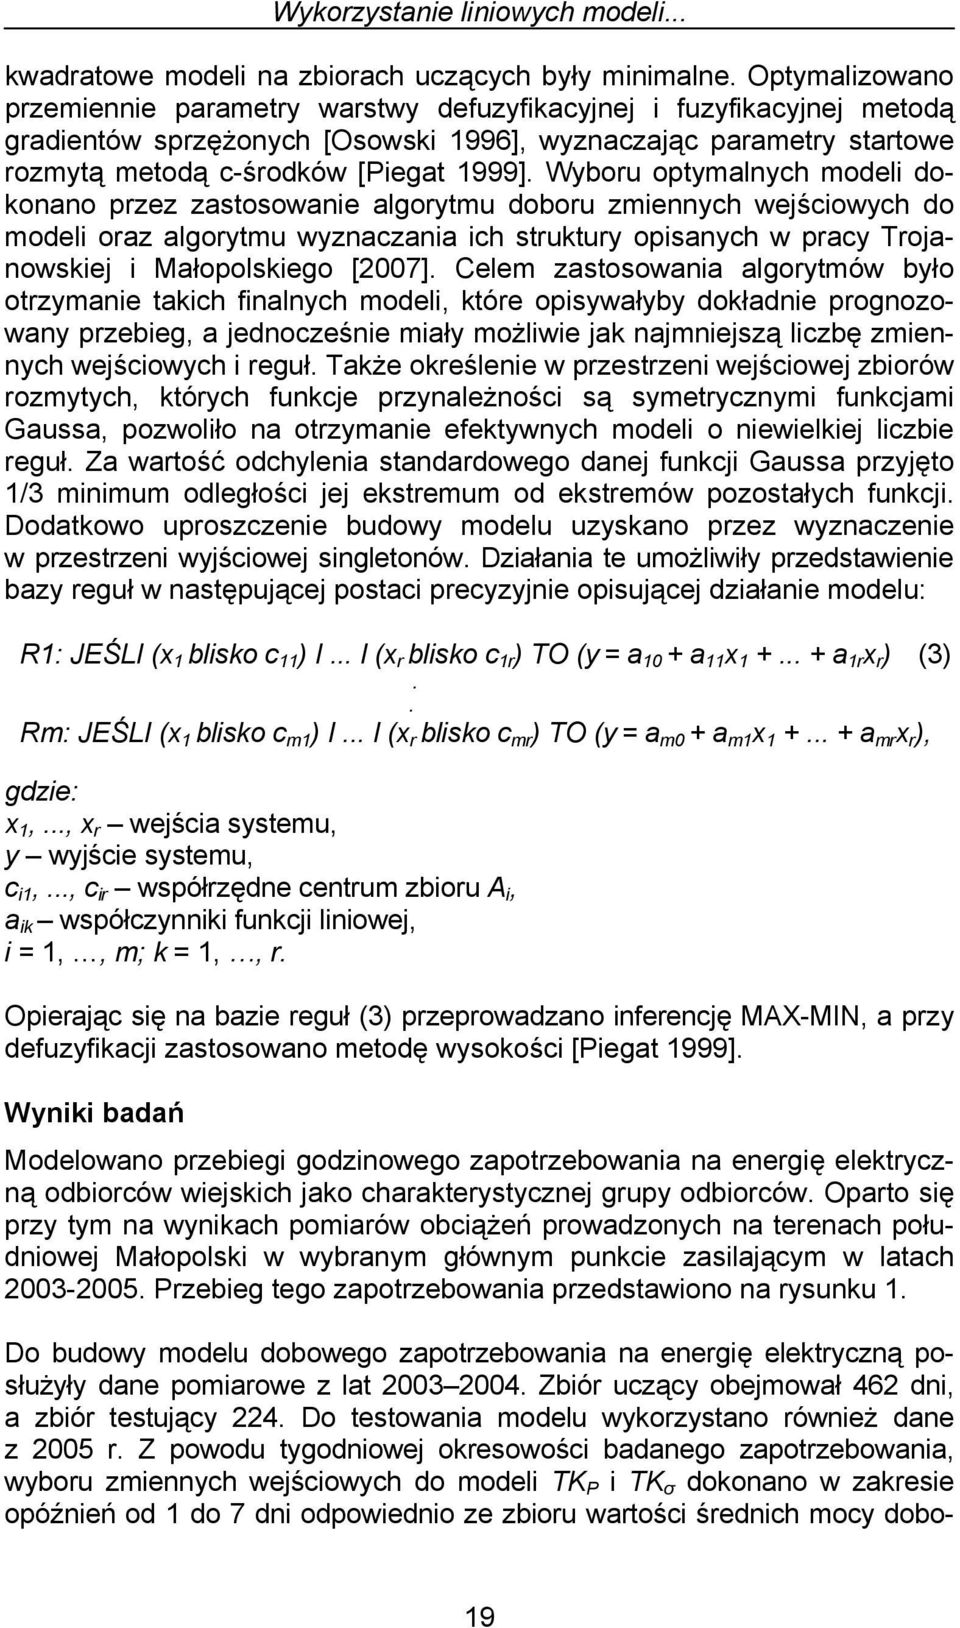 Wyboru optymalnych modeli dokonano przez zastosowanie algorytmu doboru zmiennych wejściowych do modeli oraz algorytmu wyznaczania ich struktury opisanych w pracy Trojanowskiej i Małopolskiego [2007].